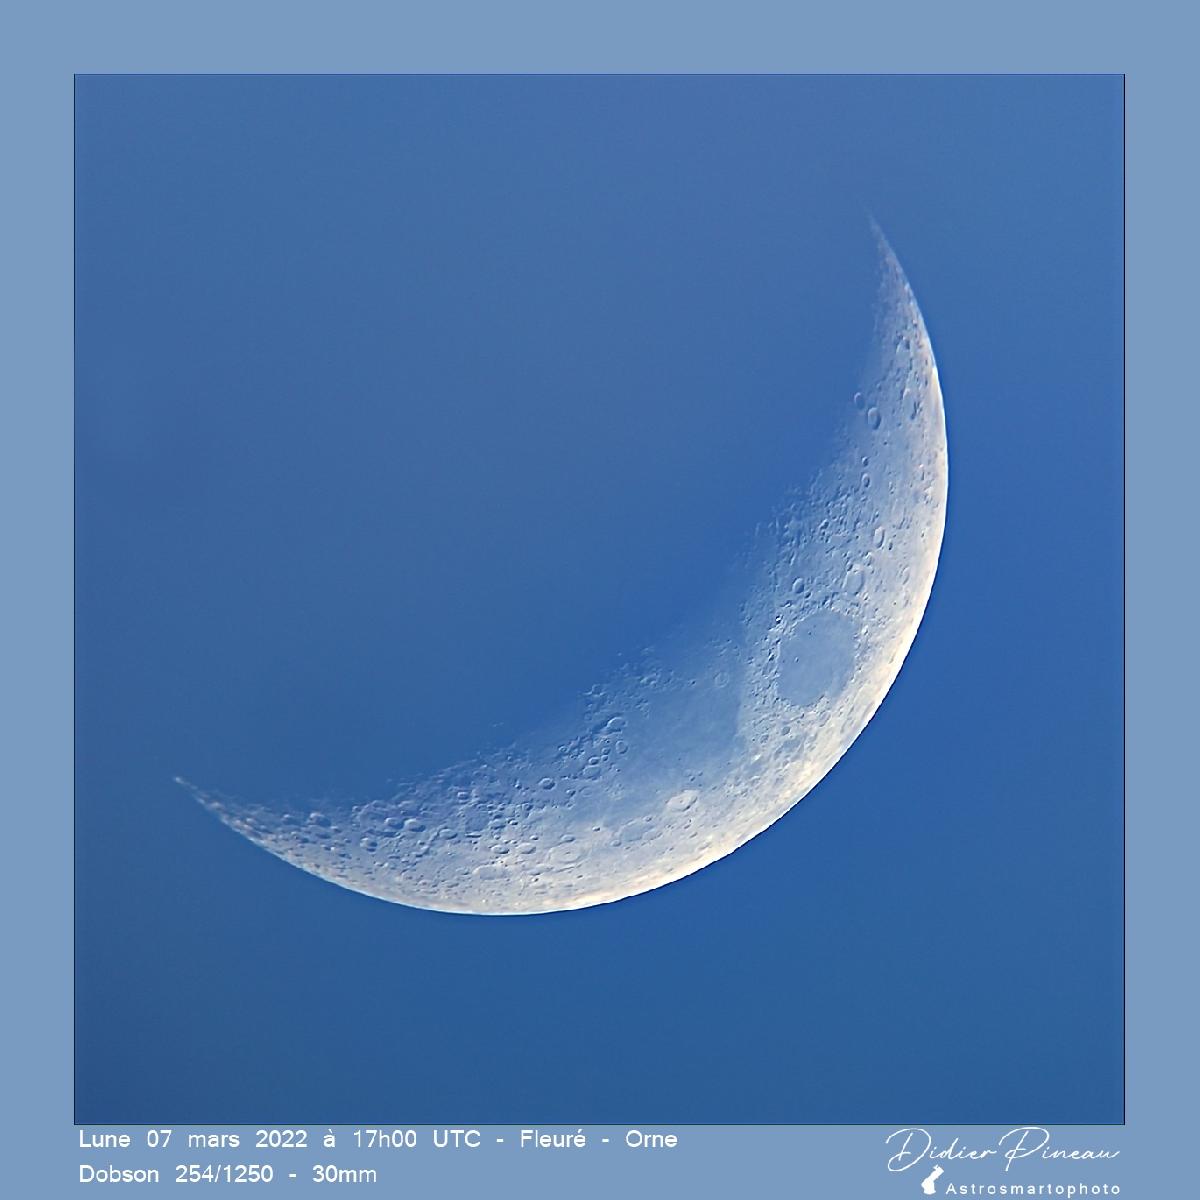 Lune 07 mars 2022 17h00 UTC